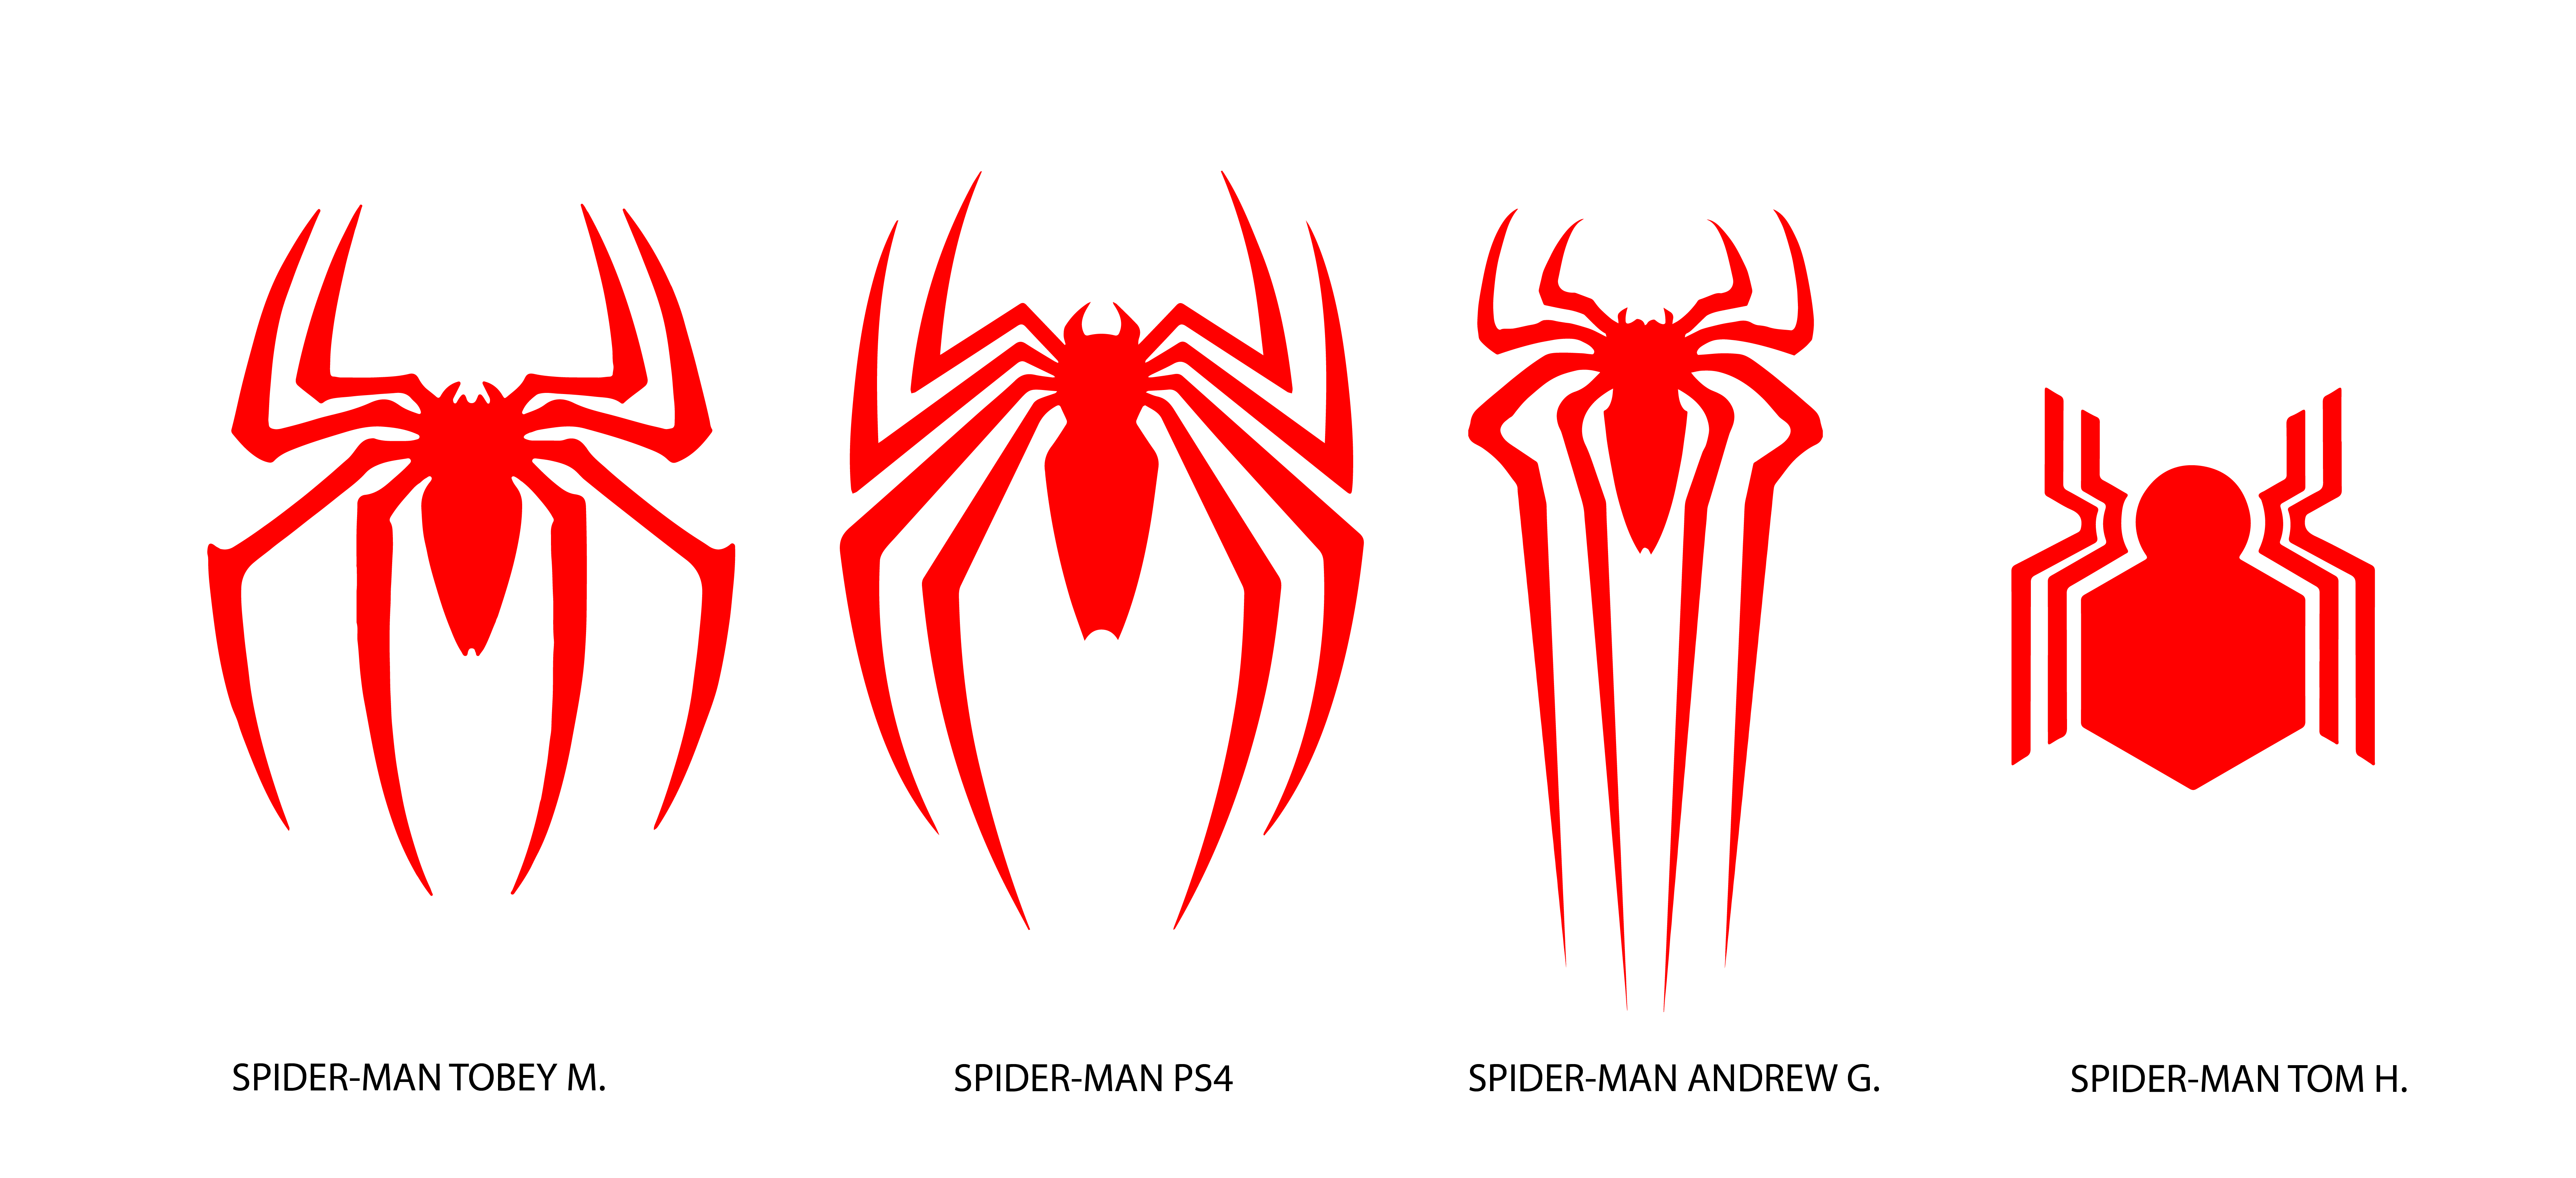 Spider-Man Logo - SPIDER-MAN LOGO COMPARISON WHICH ONE IS YOUR FAVORITE ? : SpidermanPS4